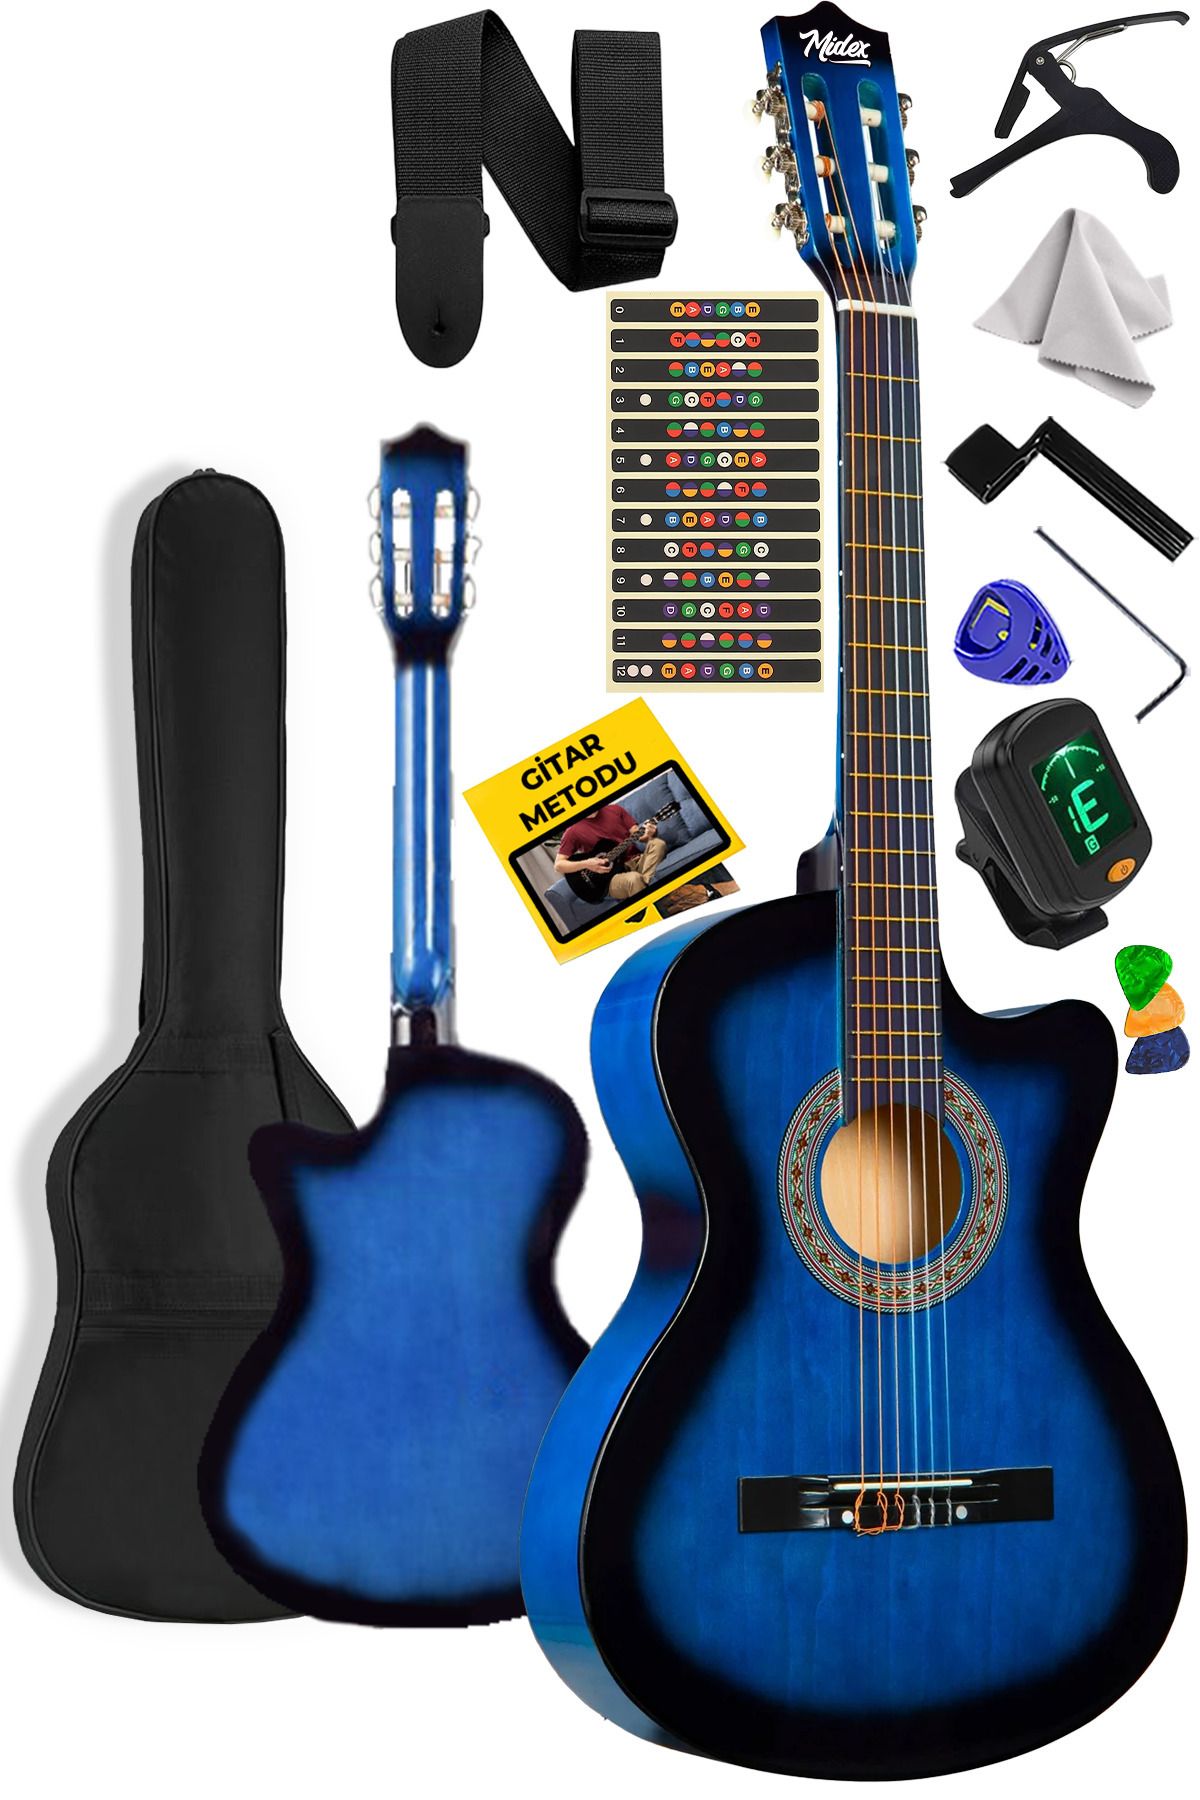 Midex Cg-395bl Mavi Renk Kesik Klasik Gitar 4/4 Yetişkin Boy Sap Ayarlı Full Set